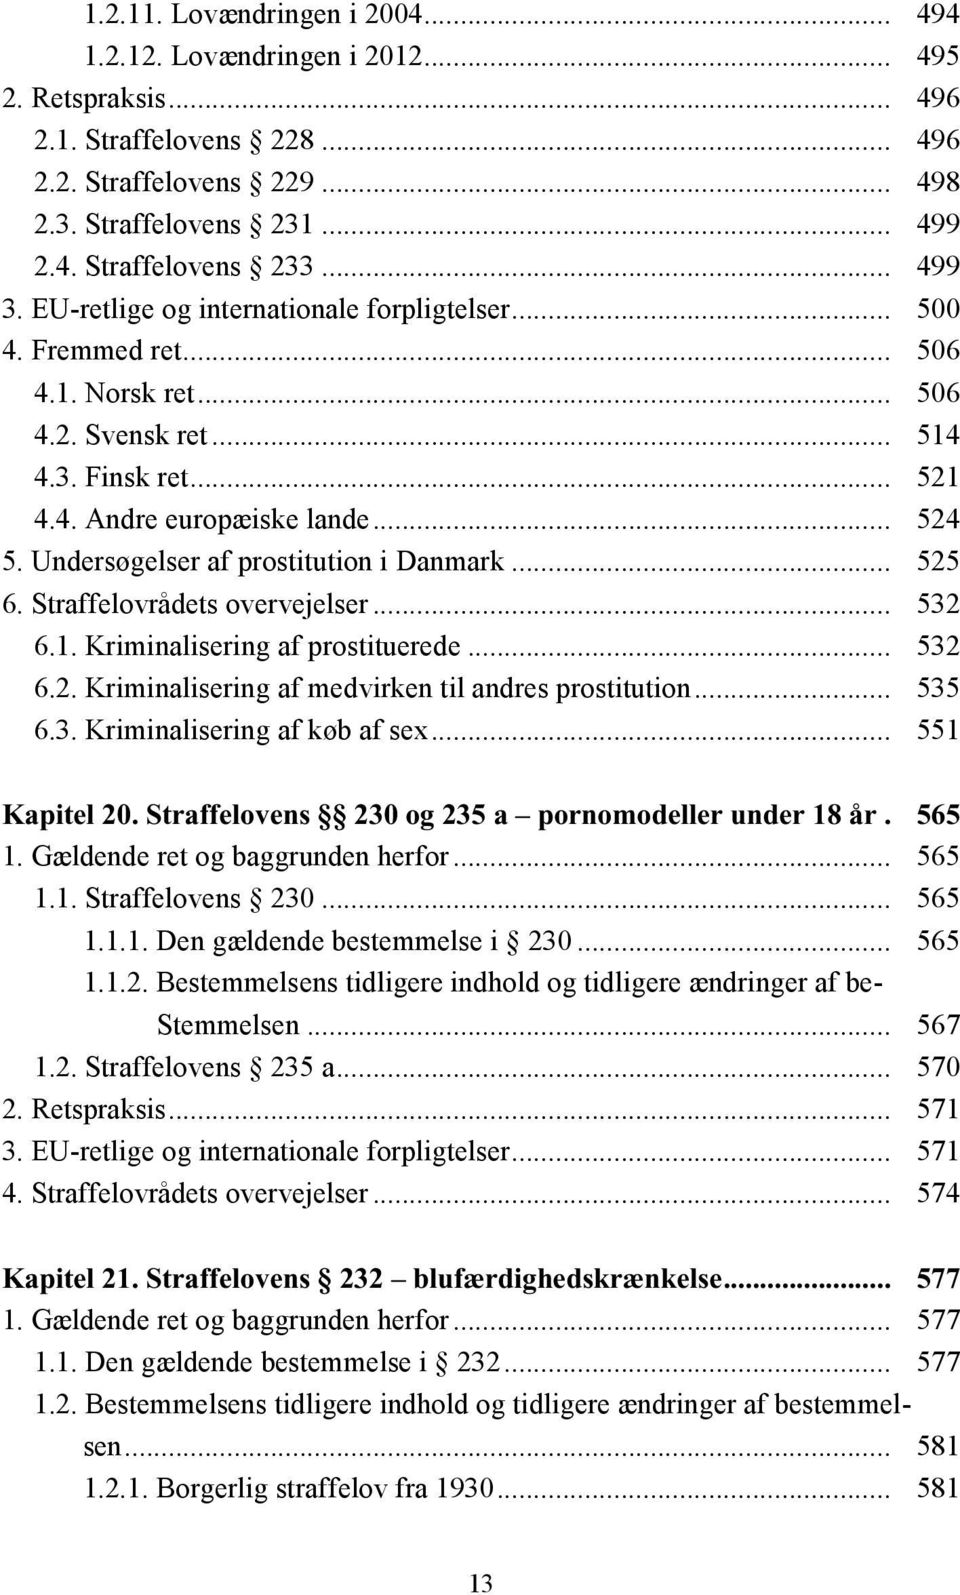 Undersøgelser af prostitution i Danmark... 525 6. Straffelovrådets overvejelser... 532 6.. Kriminalisering af prostituerede... 532 6.2. Kriminalisering af medvirken til andres prostitution... 535 6.3. Kriminalisering af køb af sex.